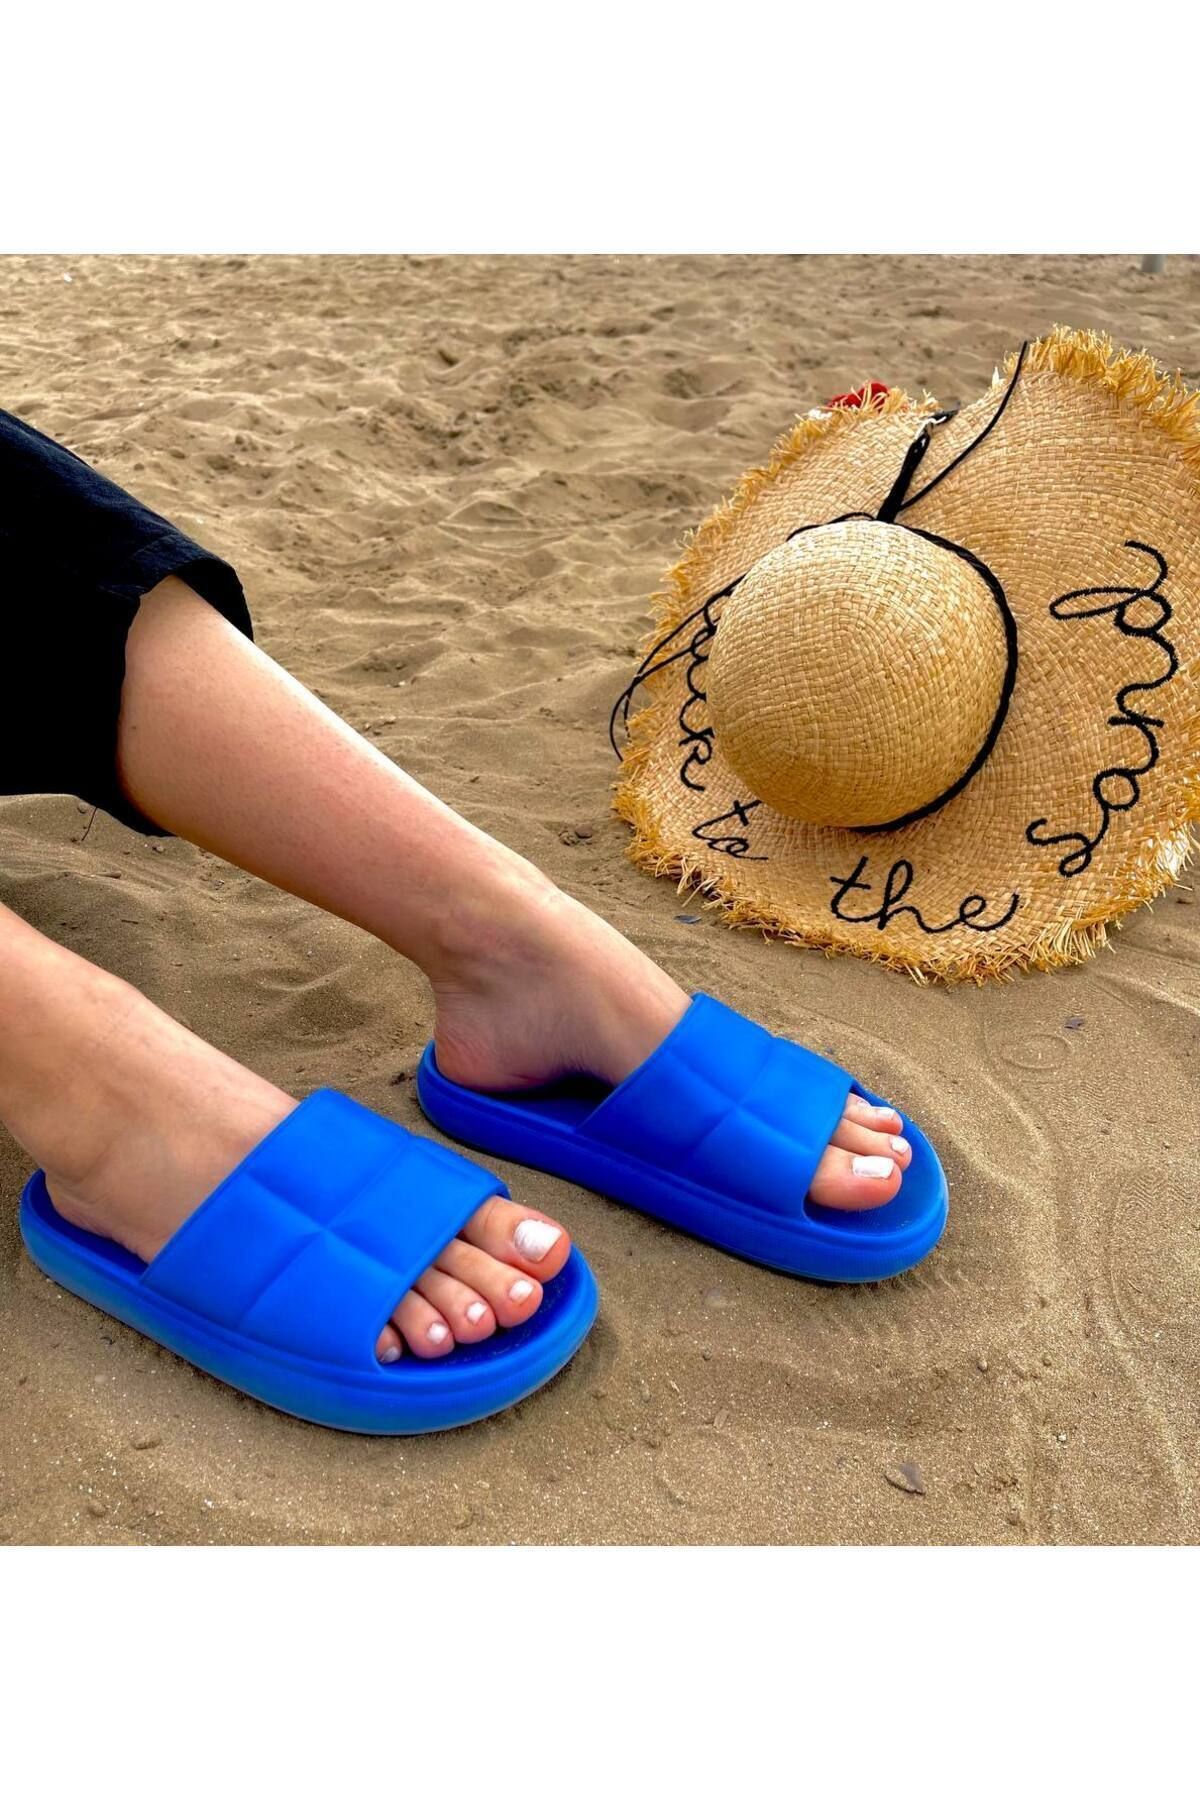 Twingo Eva Kadın Terlik Deniz Plaj Havuz Tatil Terliği Saks Mavisi